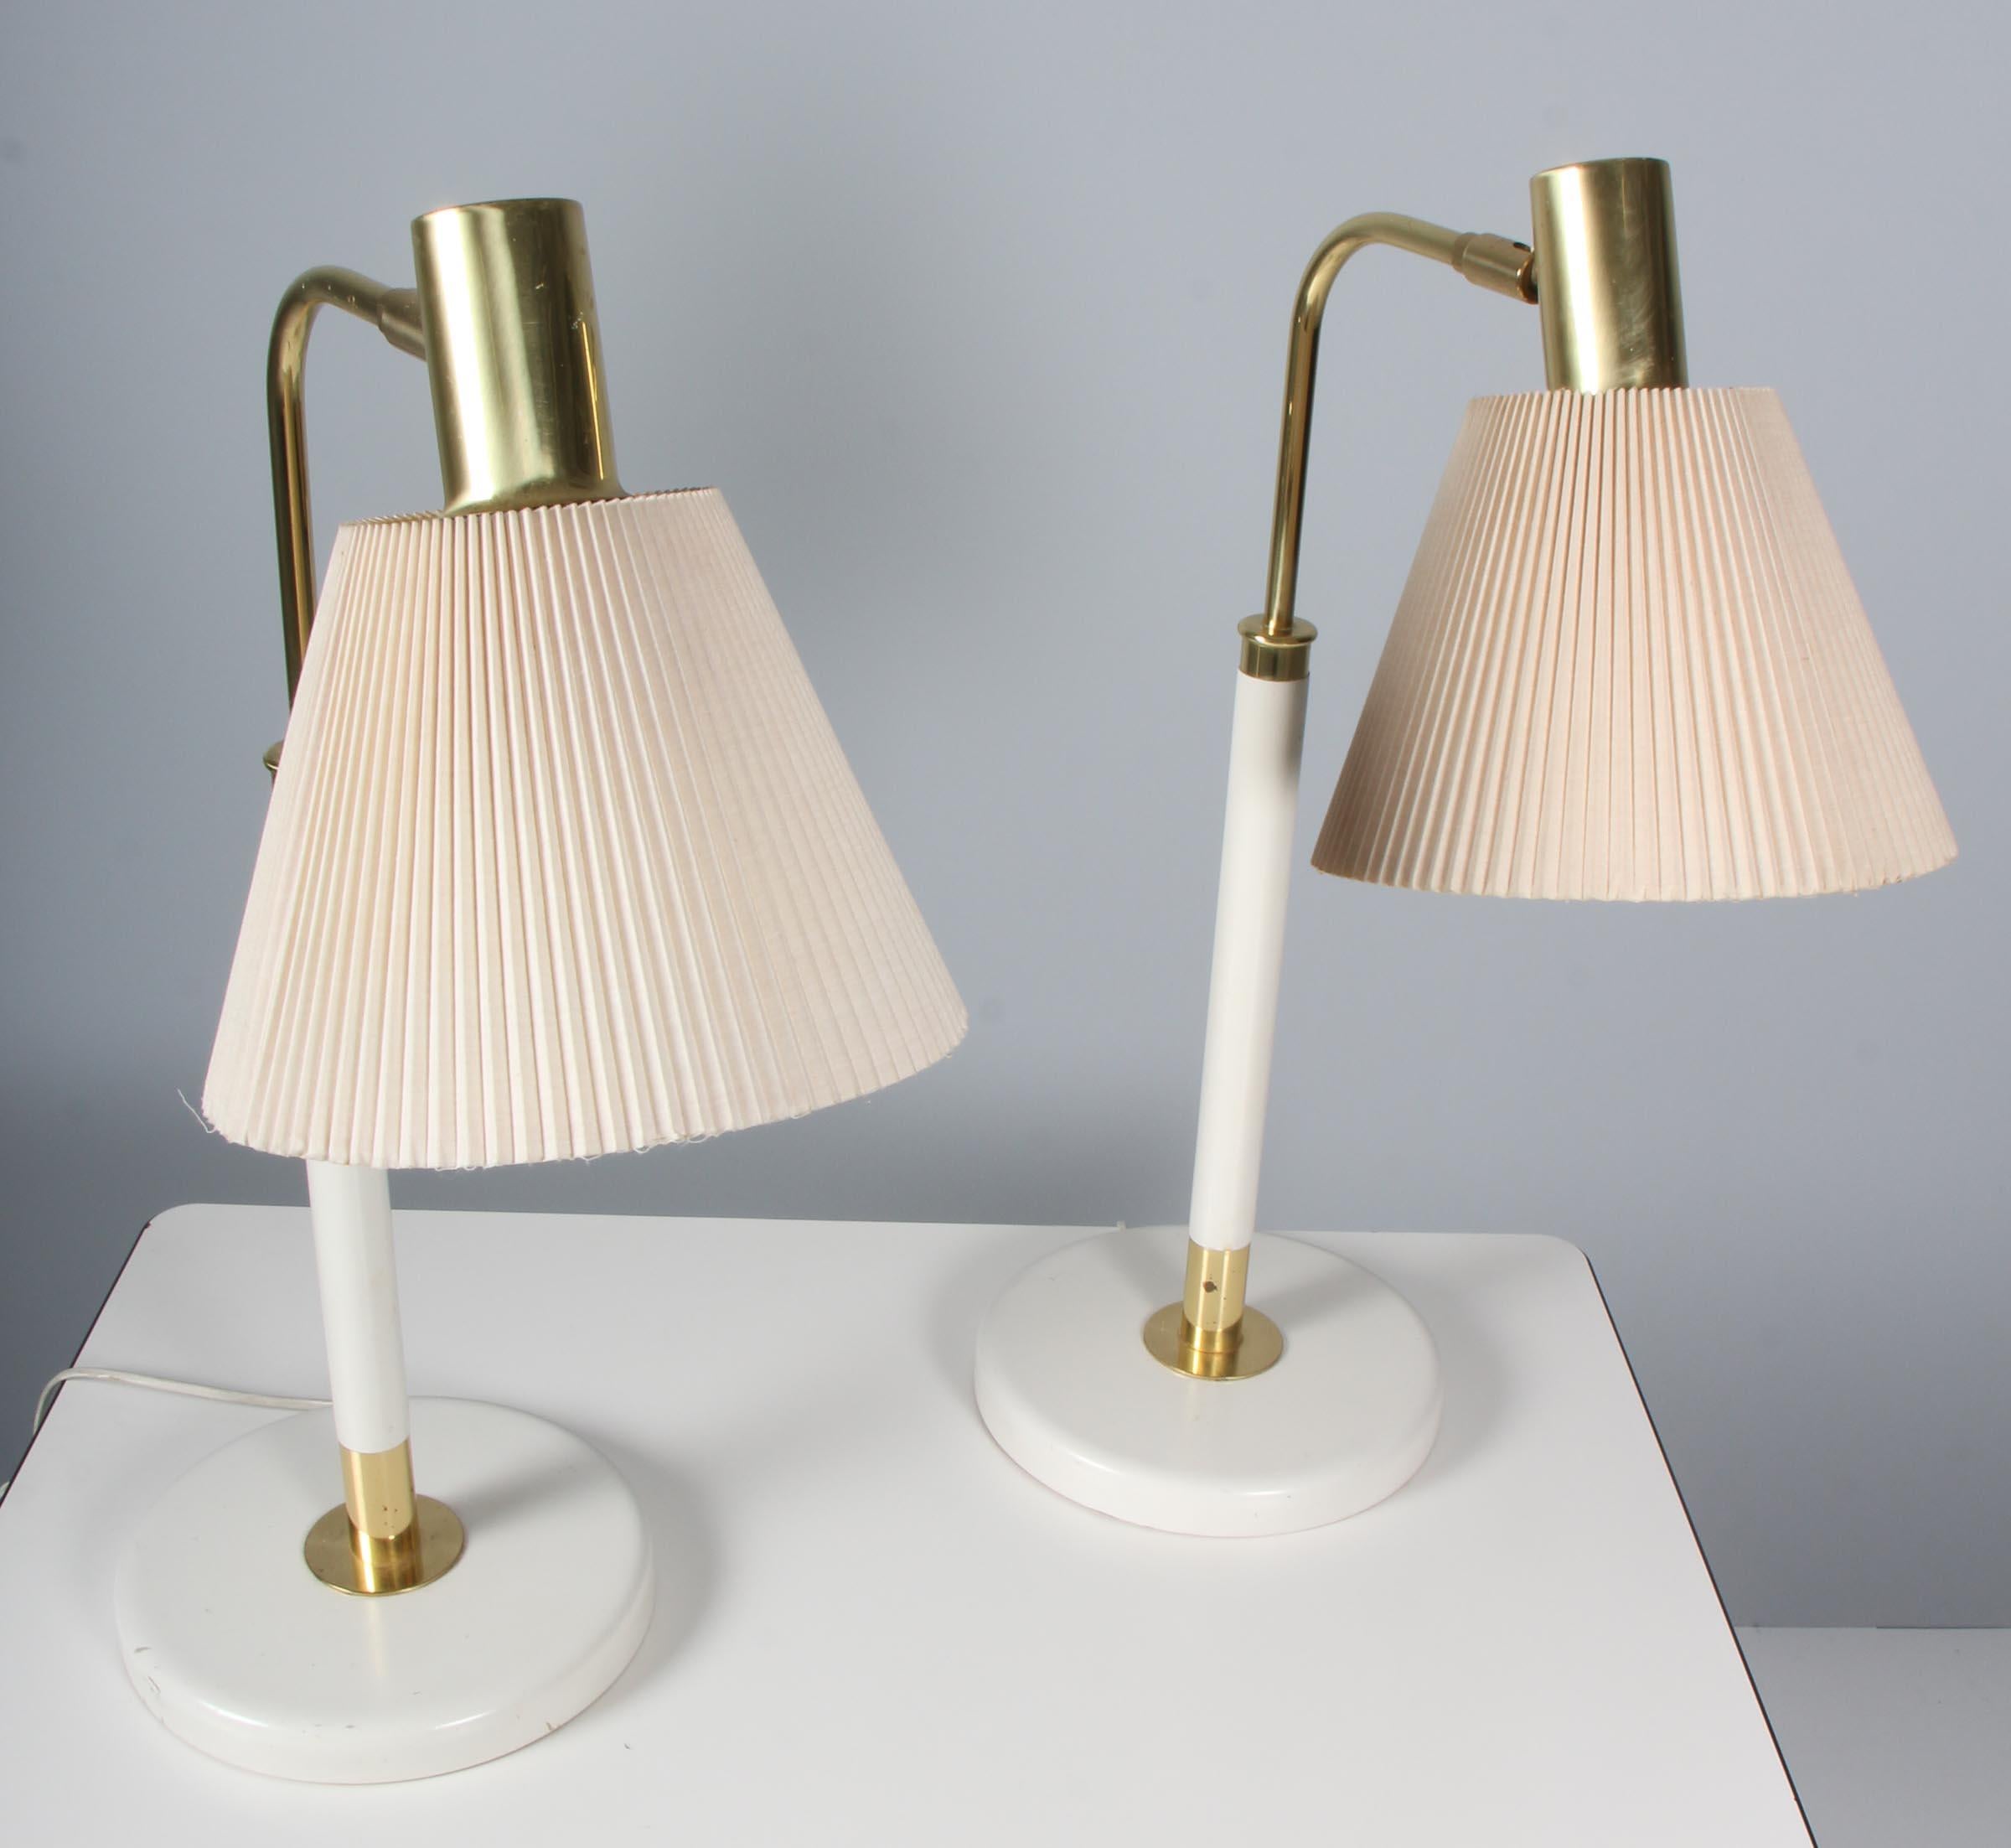 Karin Mobring, Thomas Jelinek : paire de lampes de table en laiton et bois laqué blanc. 

Ombres avec des dommages mineurs.

Modèle Stockholm, fabriqué par Ikea dans les années 1960.